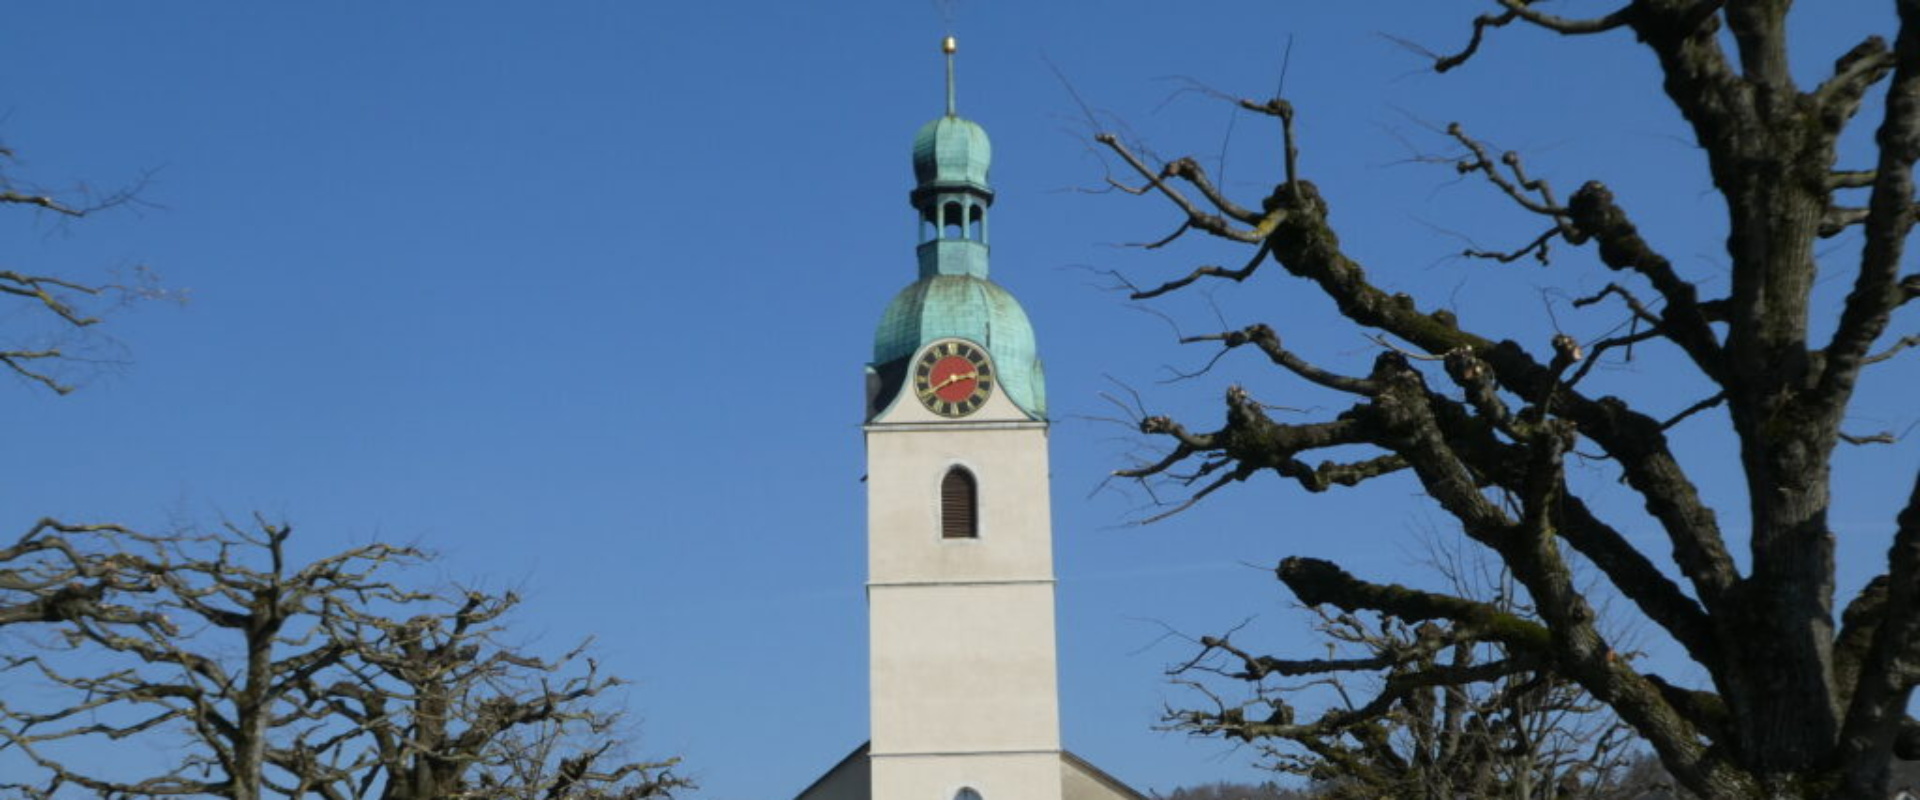 Stiftskirche St. Leodegar in Schönenwerd